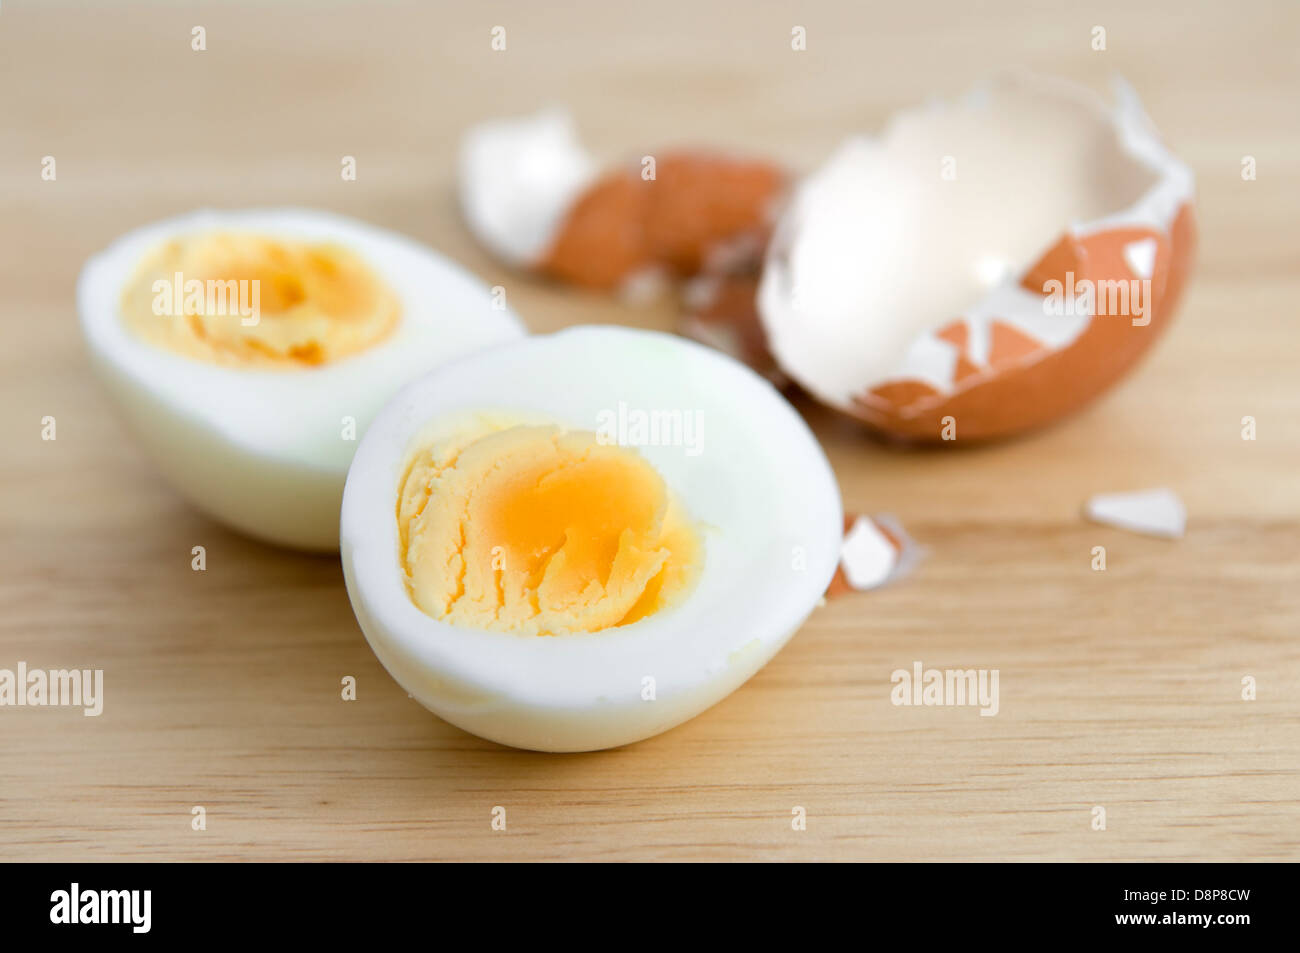 Taglia l'uovo sodo immagine stock. Immagine di cuoco - 27061637